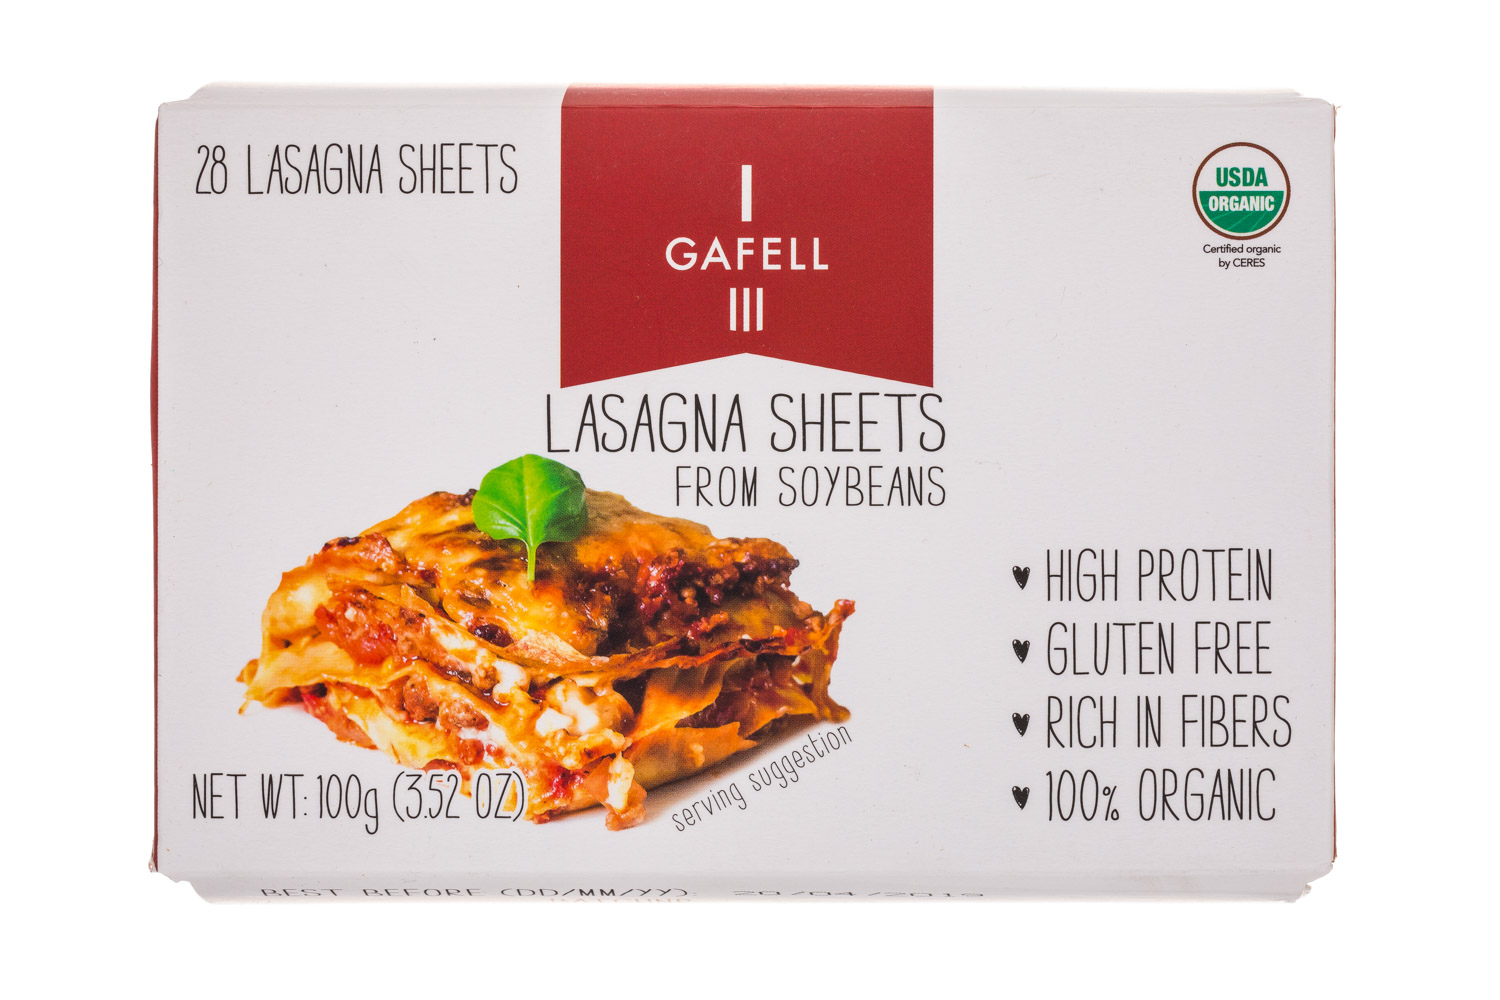 Lasagna Sheets from Soybean